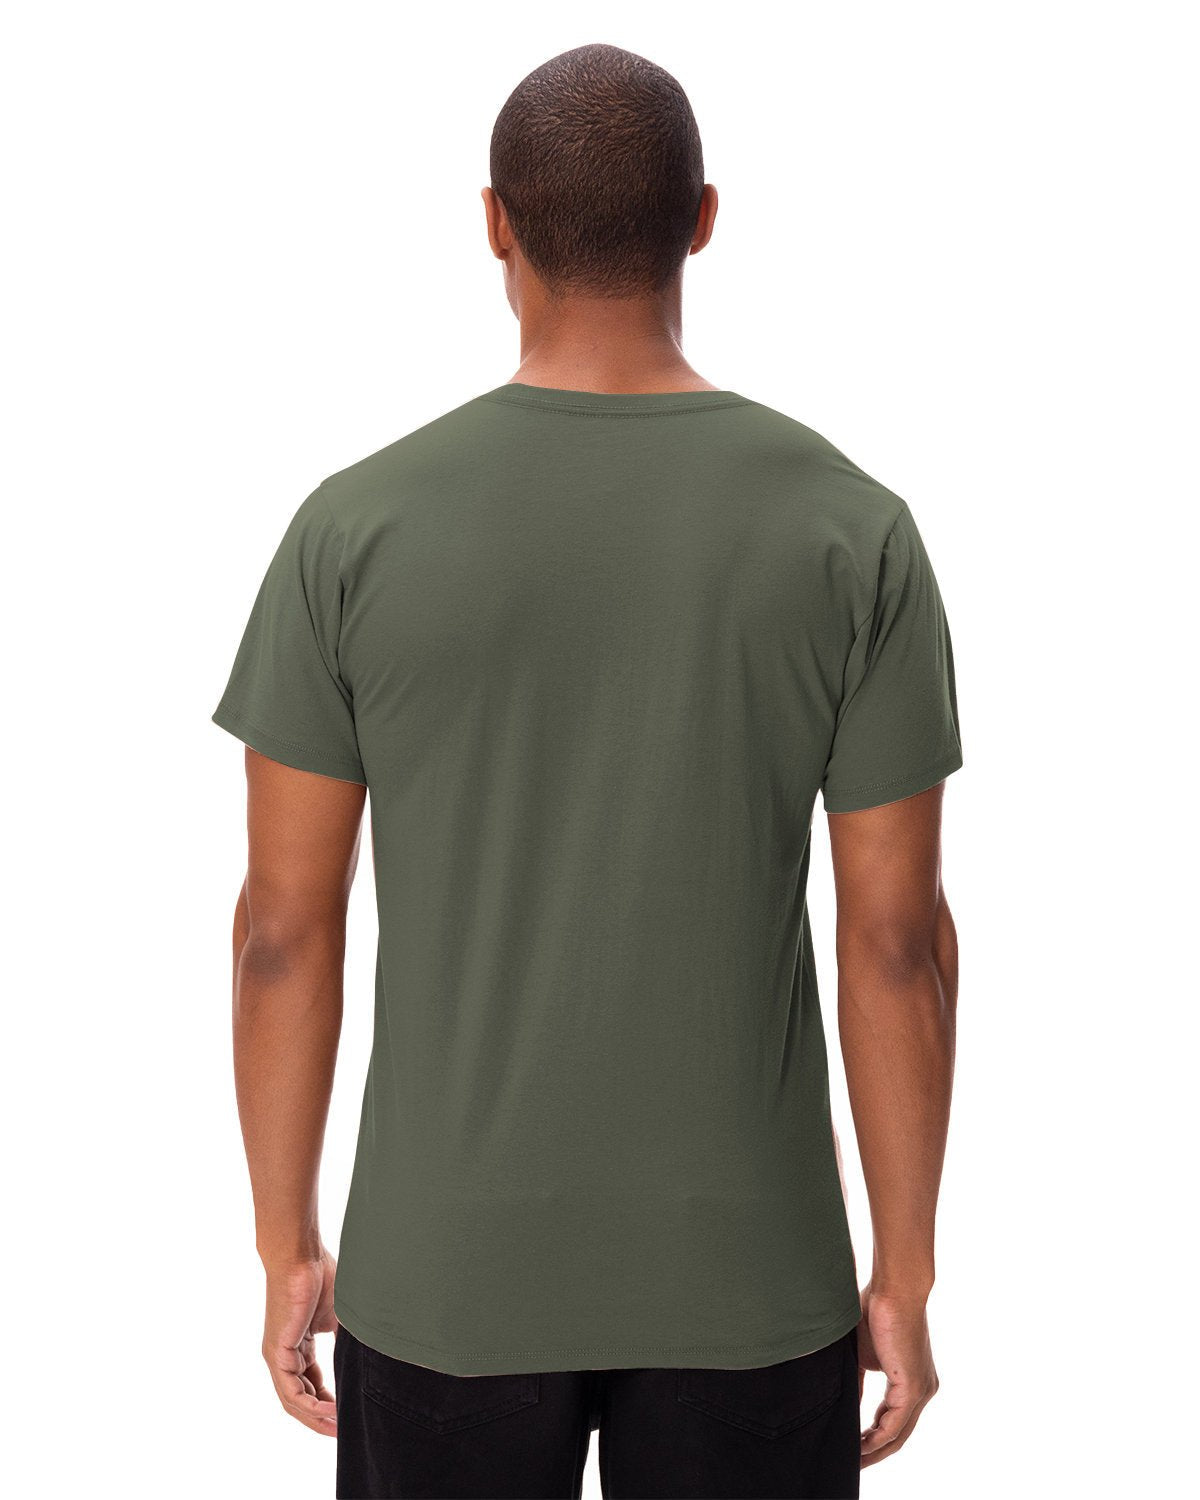 180A-Threadfast Apparel-ARMY-Threadfast Apparel-T-Shirts-2